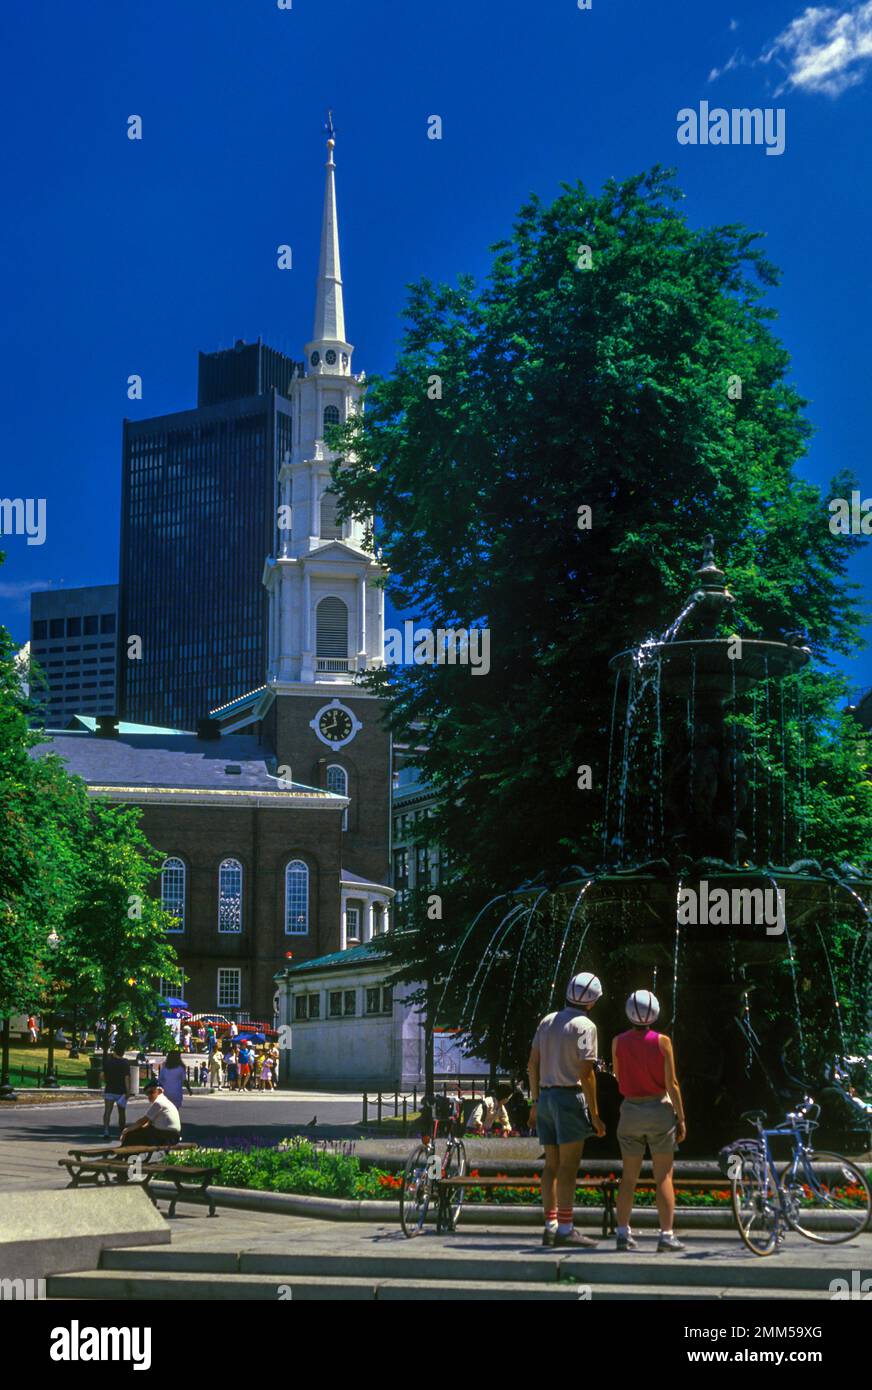 1988 HISTORICAL FOUNTAIN PARK STREET CHURCH BOSTON COMMON MASSACHUSETTS USA Stock Photo